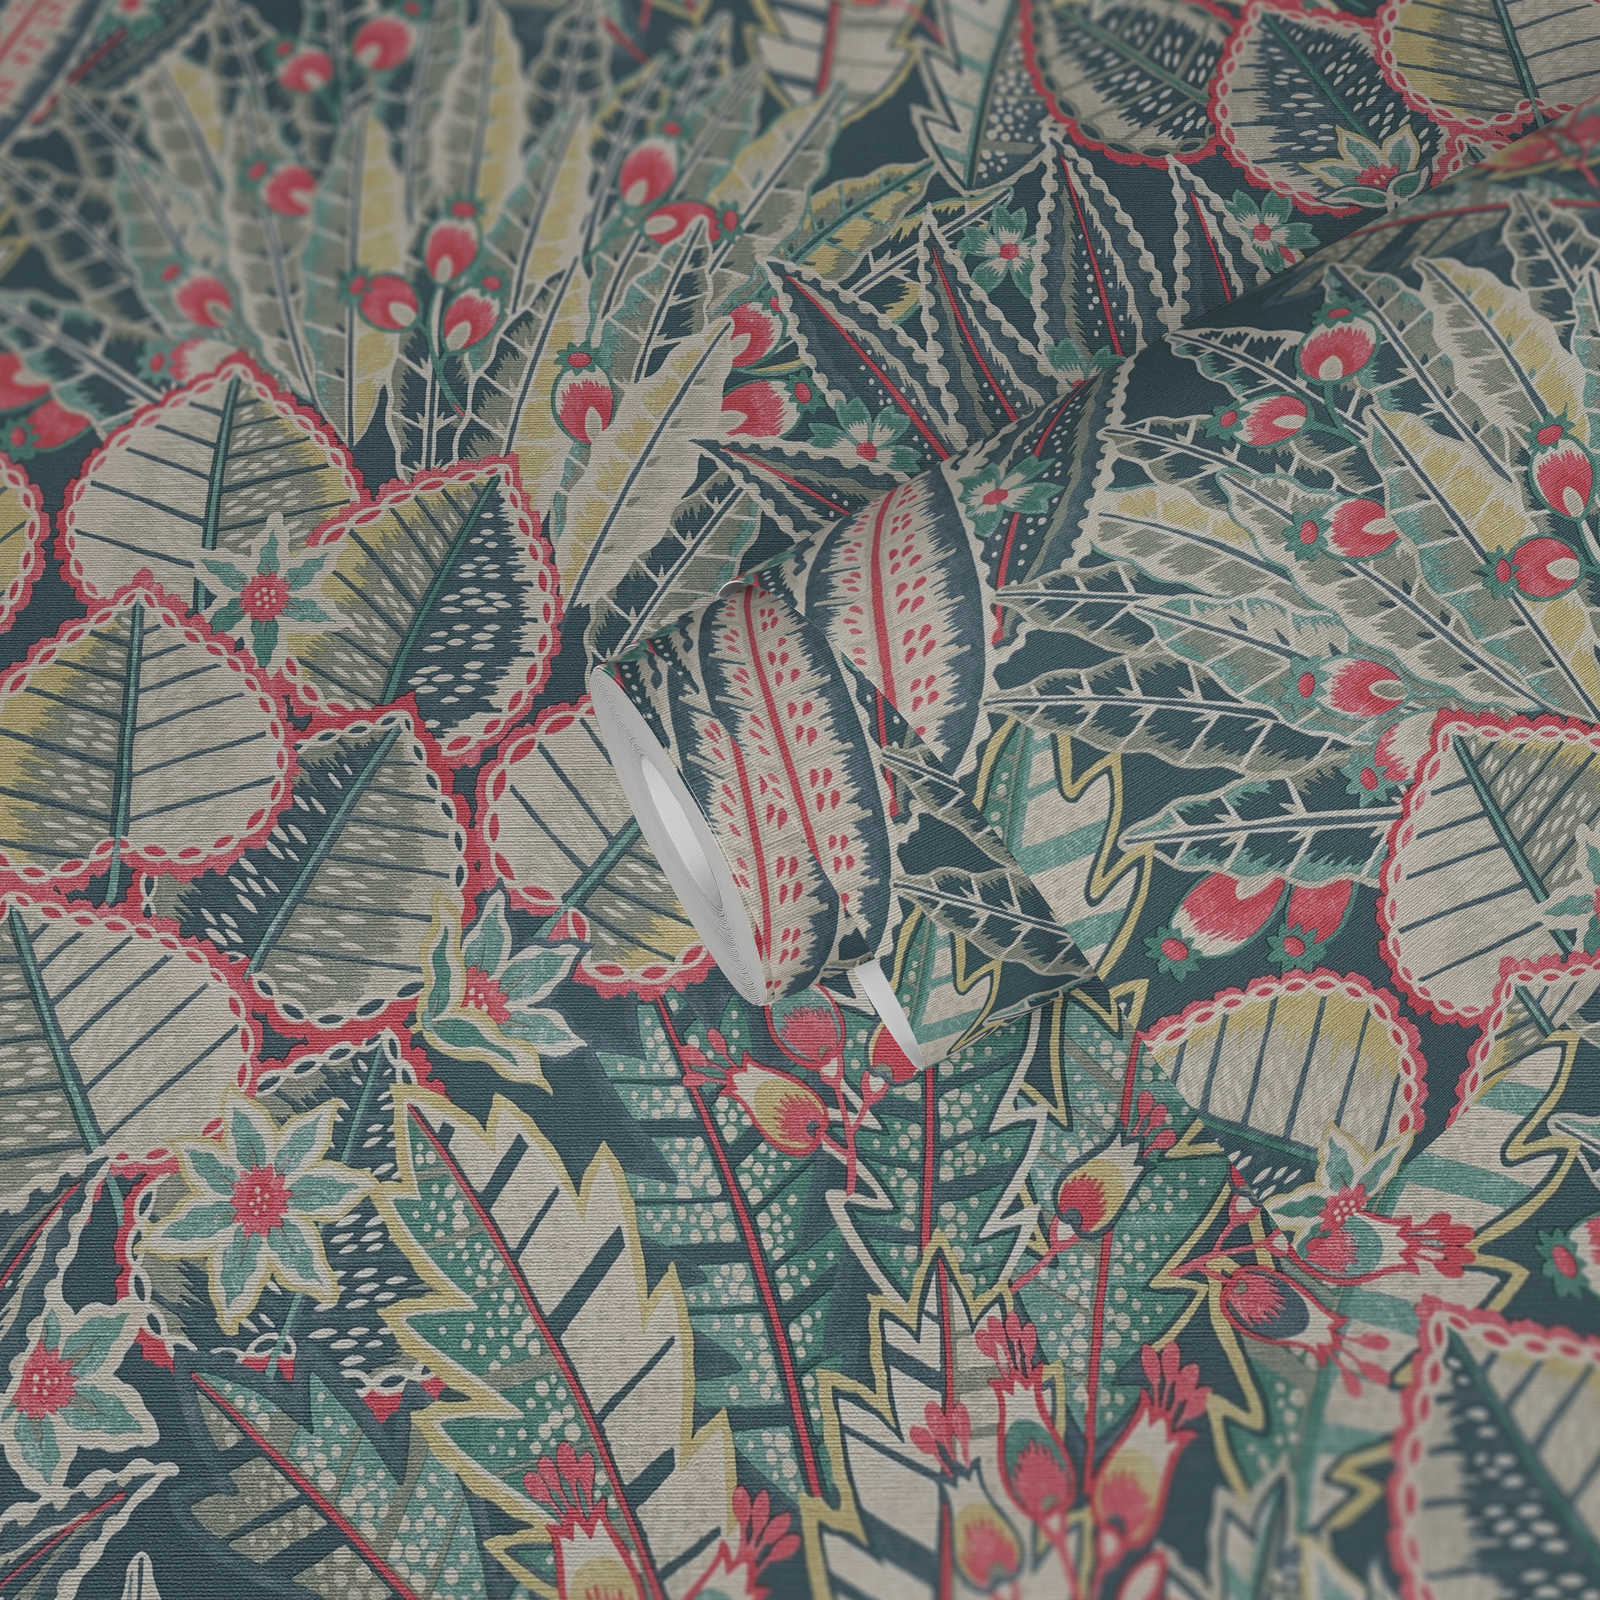             papier peint en papier intissé avec motifs de feuilles en optique jungle - bleu, vert, rouge
        